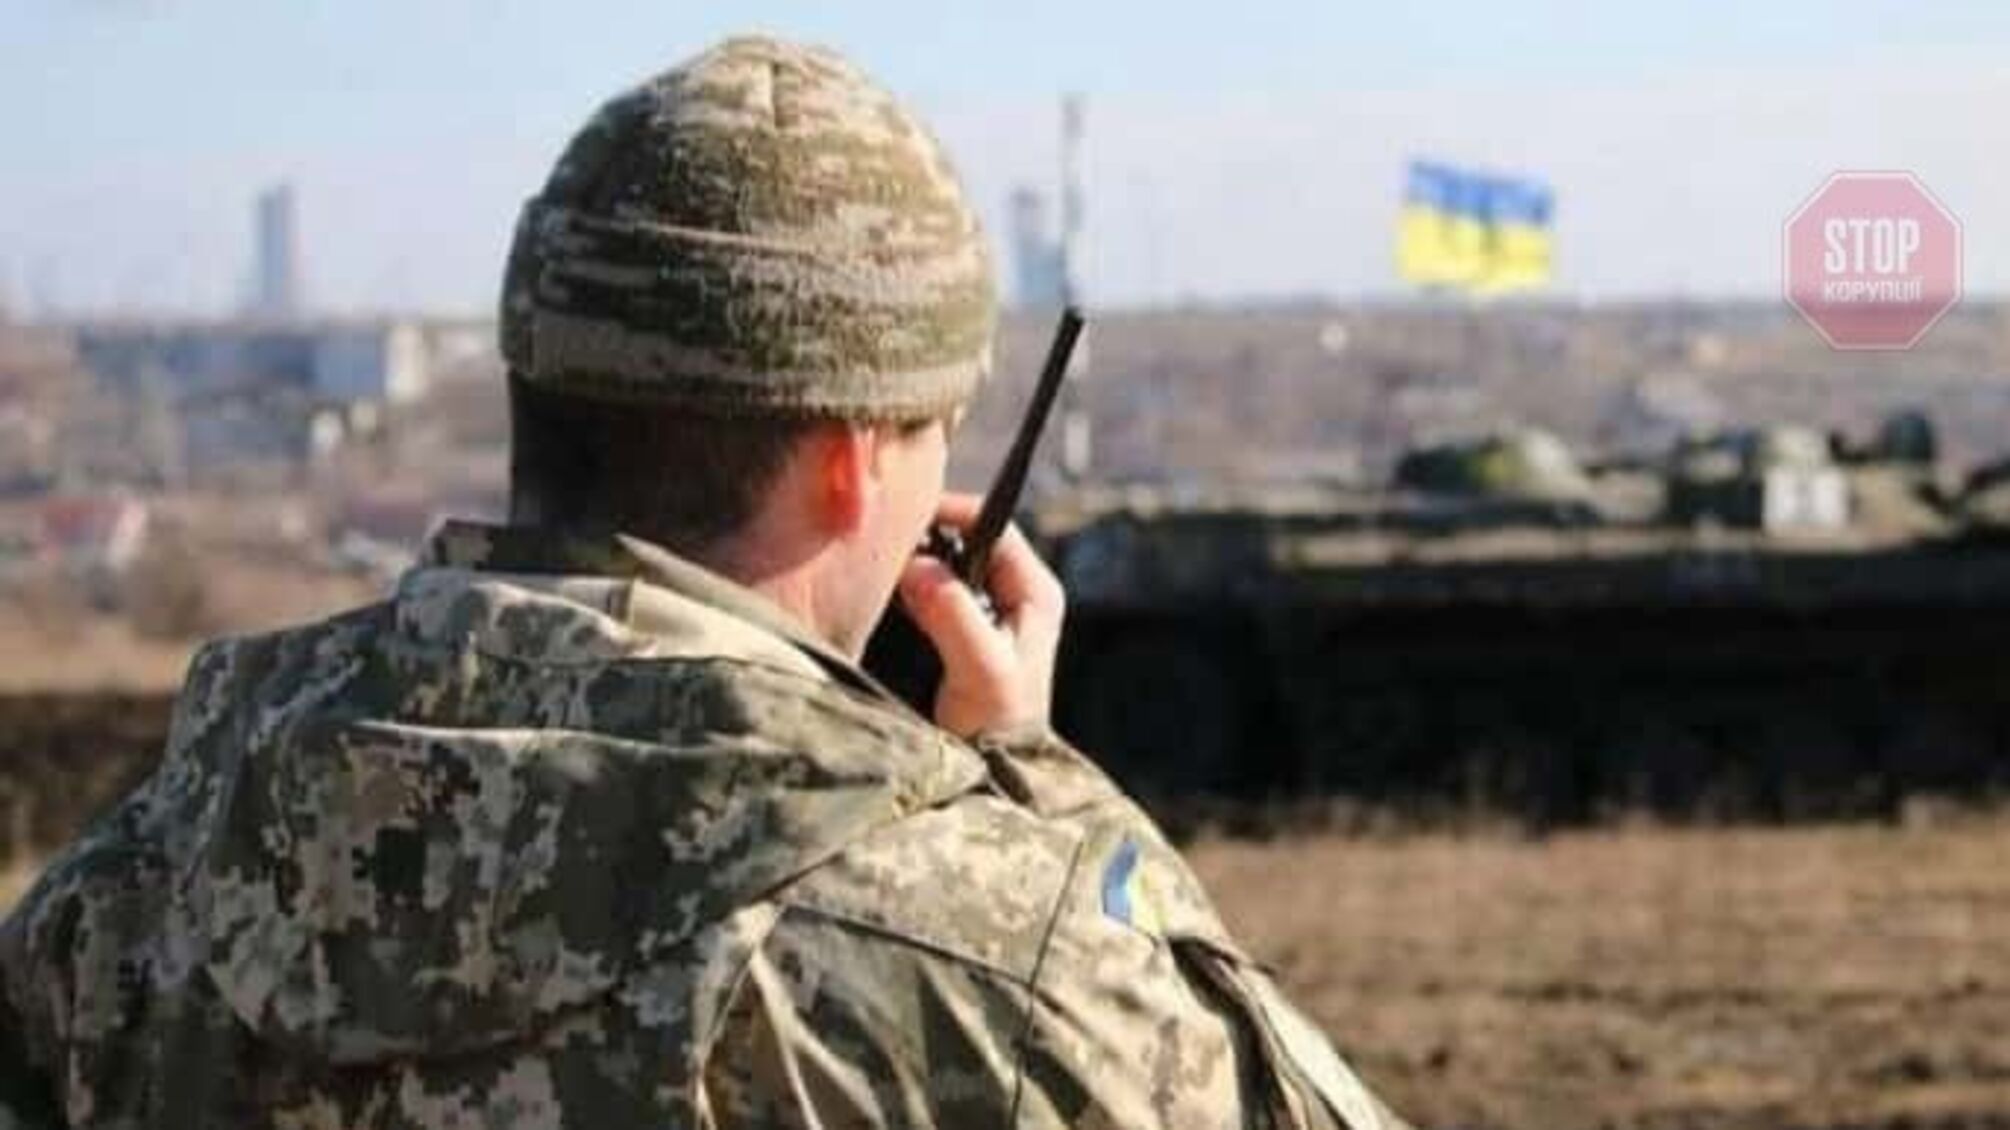 Бойовики поранили двох військових на Донбасі